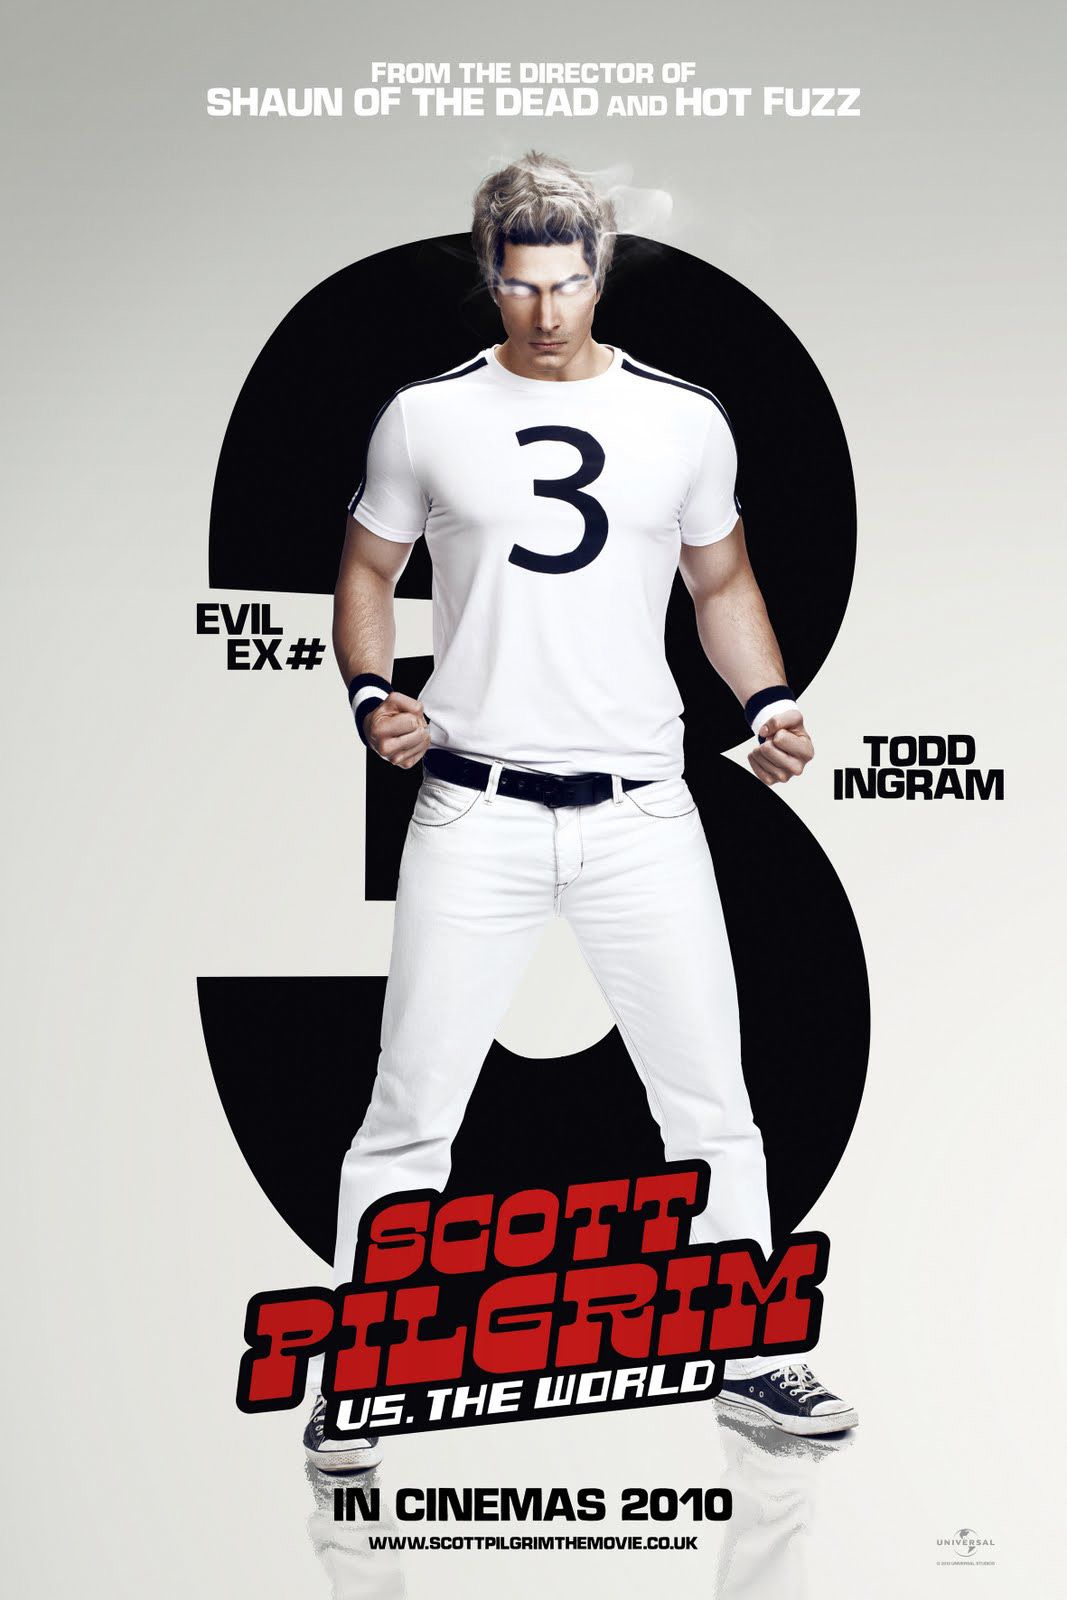 Scott Pilgrim Vs. the World Brandon Routh Character Poster